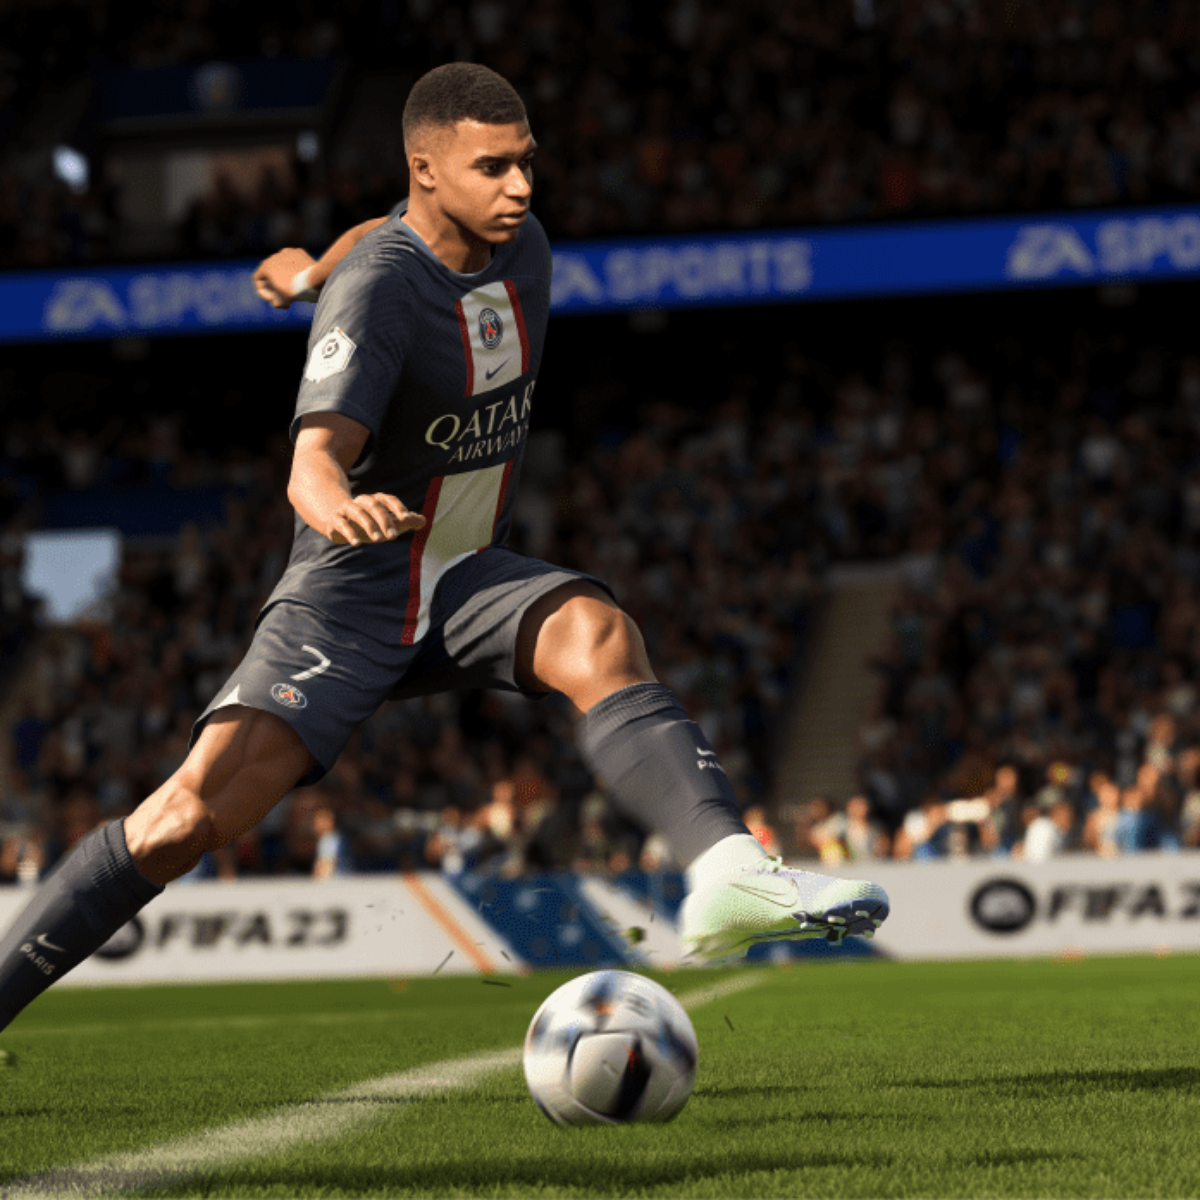 FIFA 23 foi o jogo mais vendido em 2022 por meio da OLX